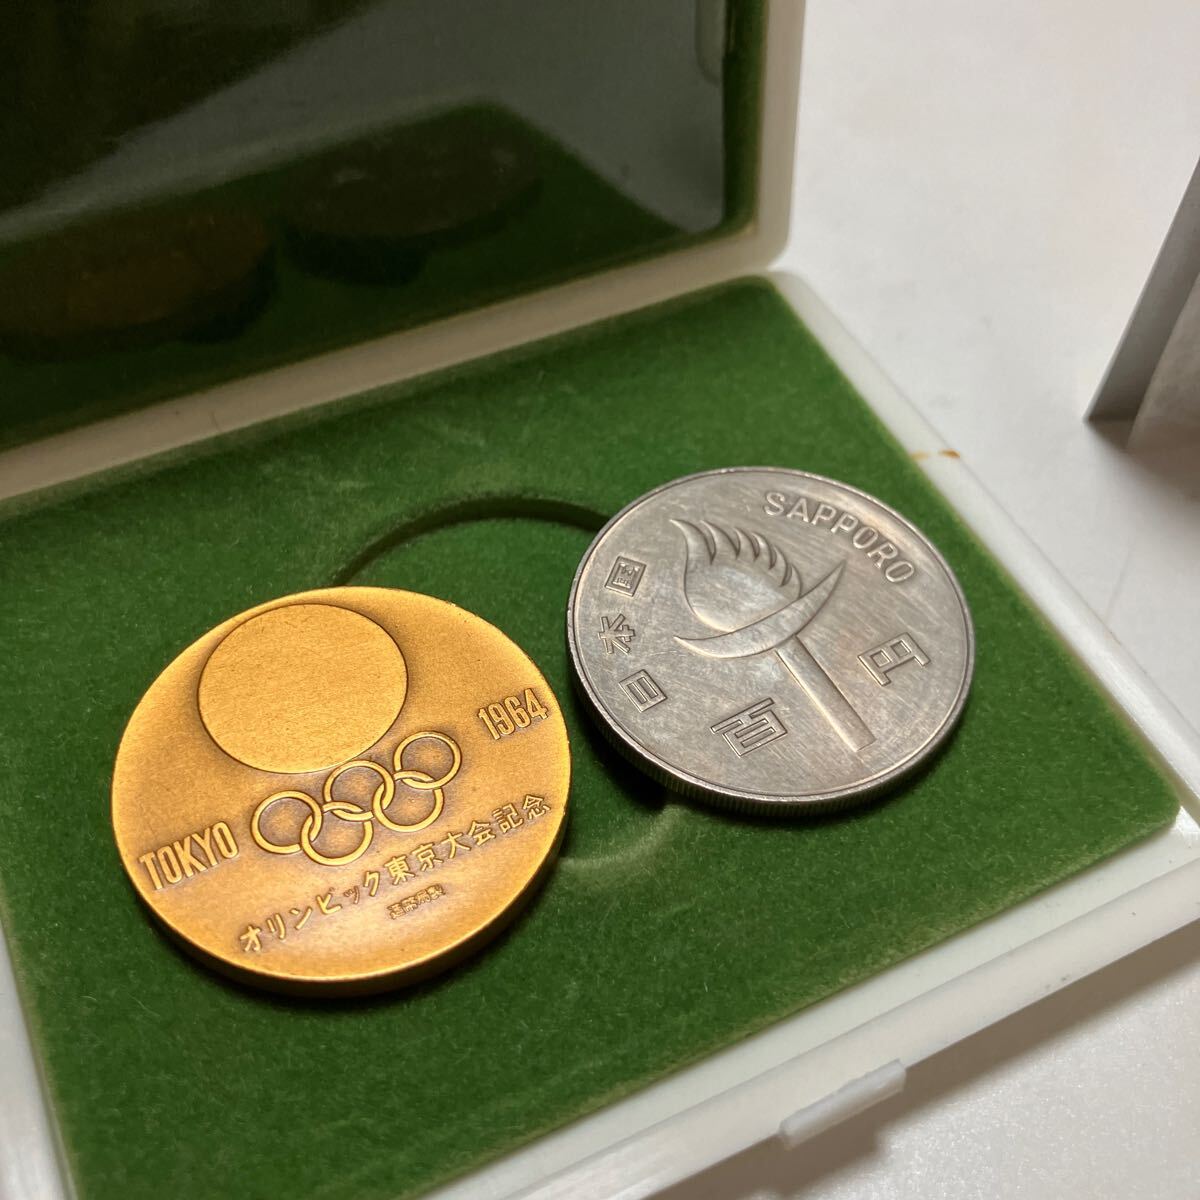 東京オリンピック 東京五輪 1964年 記念メダル 銅メダル 昭和 札幌オリンピック記念硬貨 セット まとめての画像2